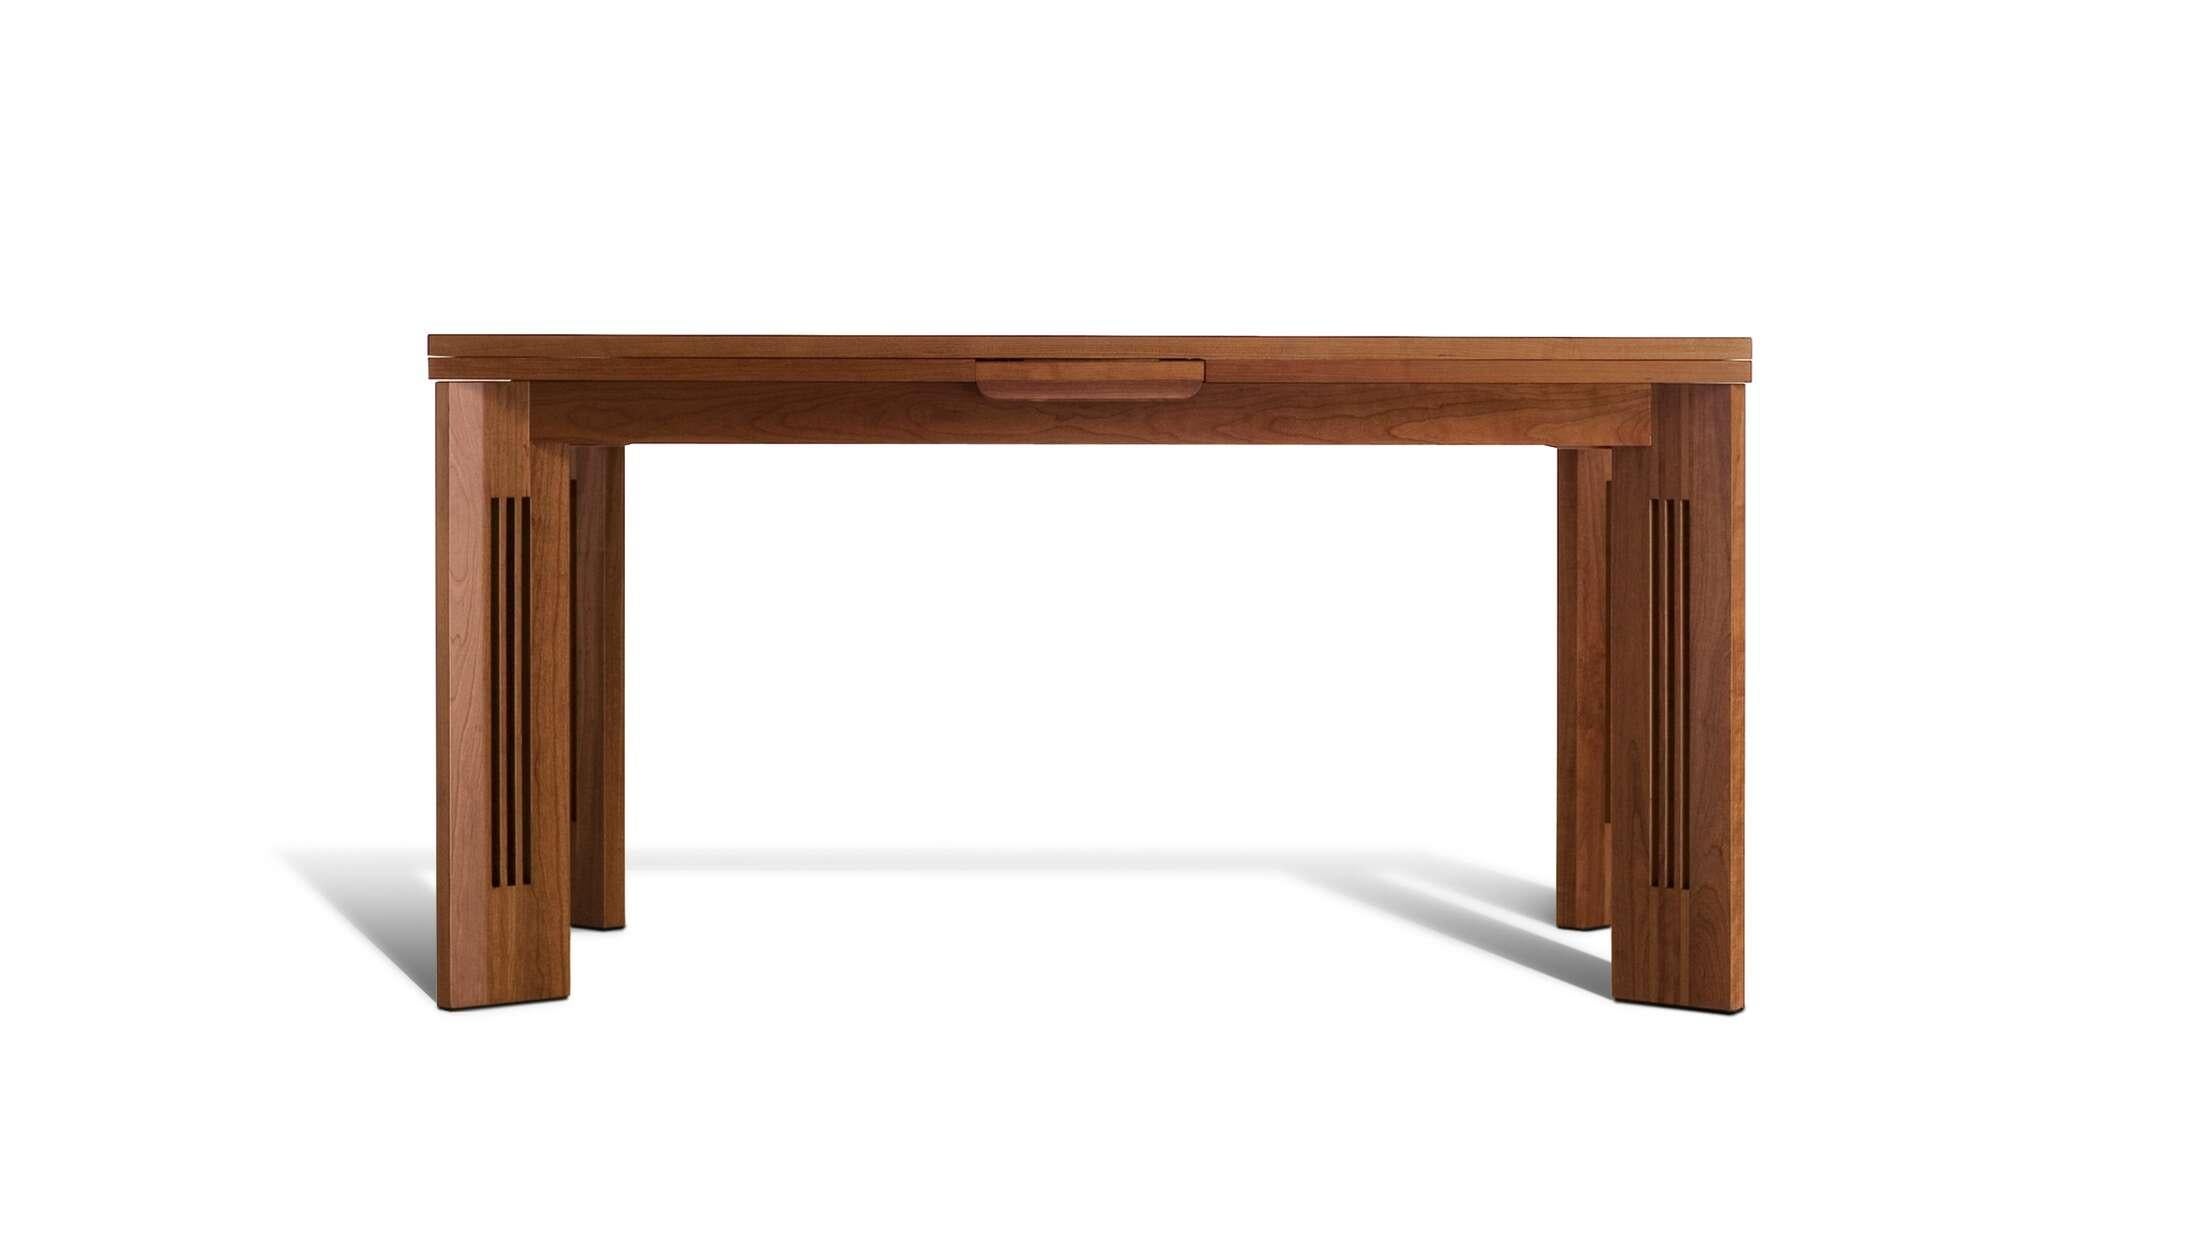 Une table extensible (largeur maximale : 265 cm) en cerisier, illustrant l'équilibre parfait entre le classique et le contemporain, conçue par Charles Rennie Mackintosh en 1905. Le caractère unique de cette table en merisier naturel réside dans le